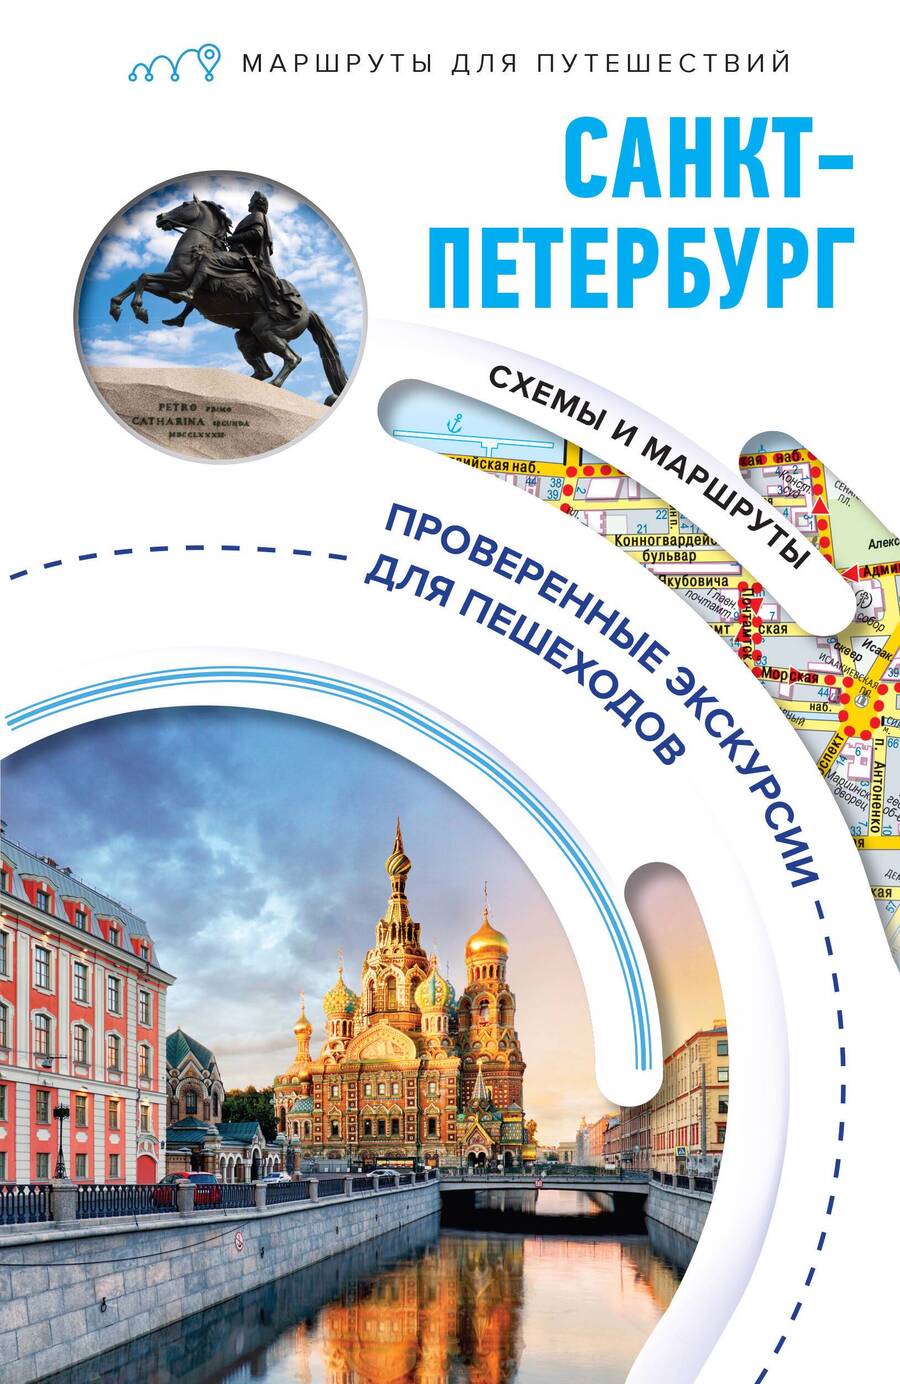 Обложка книги "Бабушкин: Санкт-Петербург. Маршруты для путешествий"